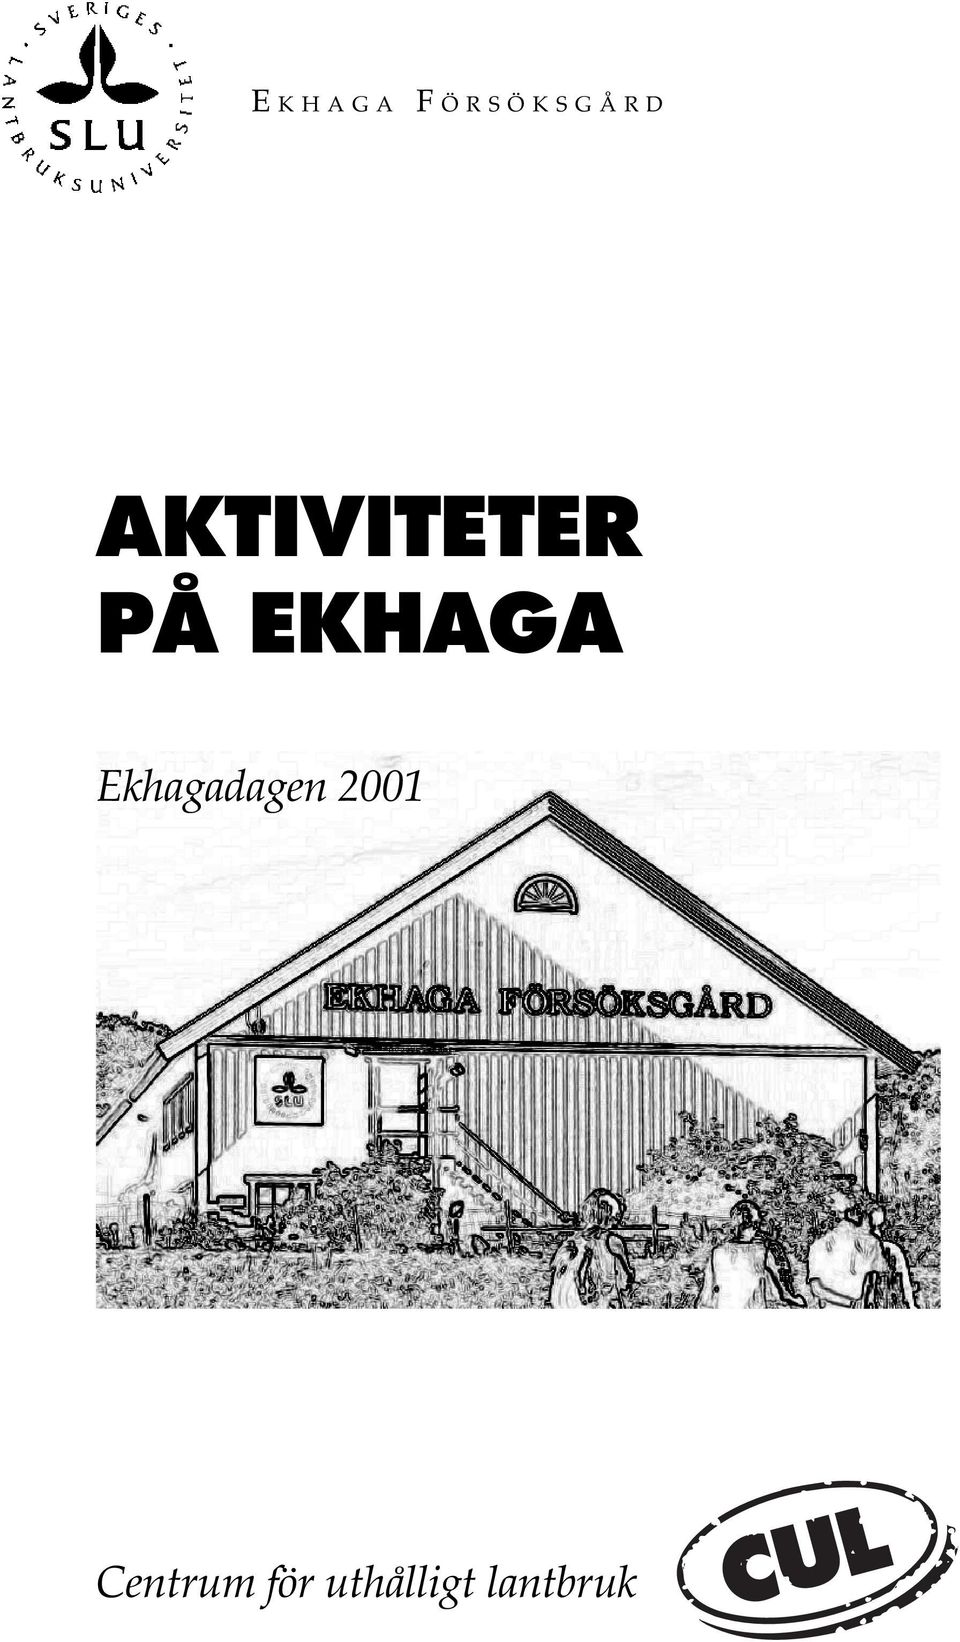 EKHAGA Ekhagadagen 2001